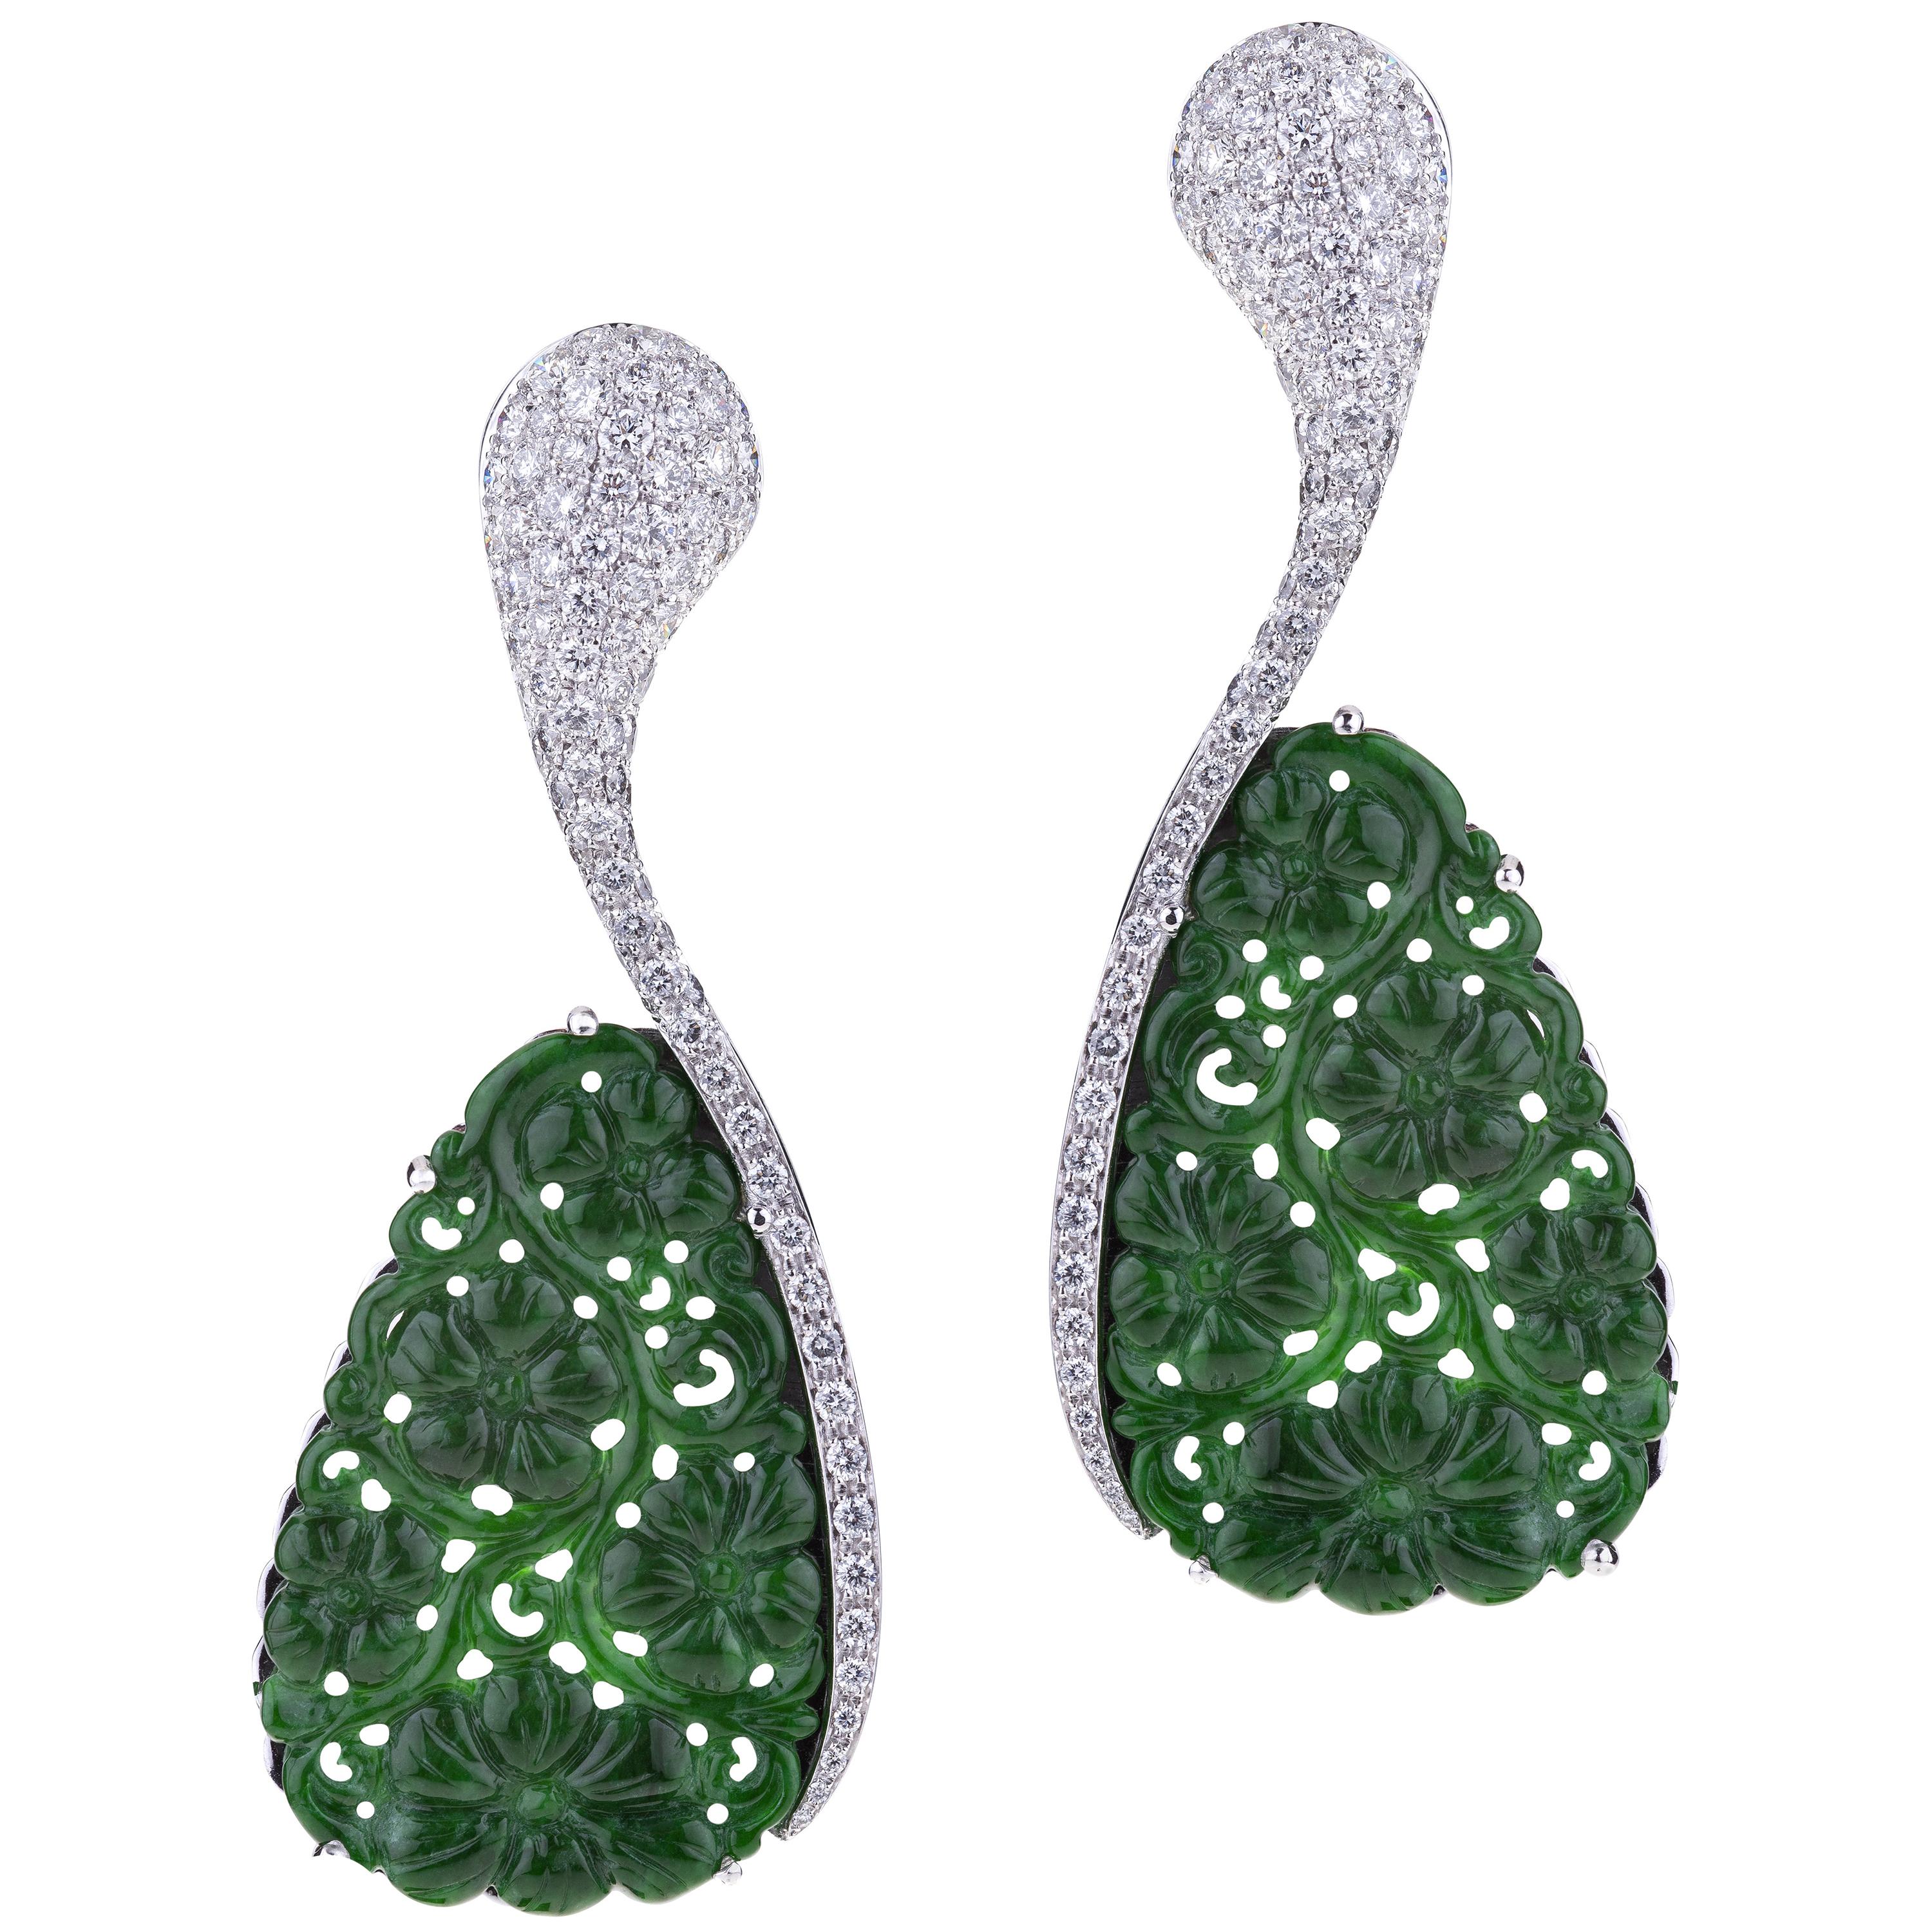 Boucles d'oreilles en or blanc sculpté avec jade vert en forme de goutte et diamants